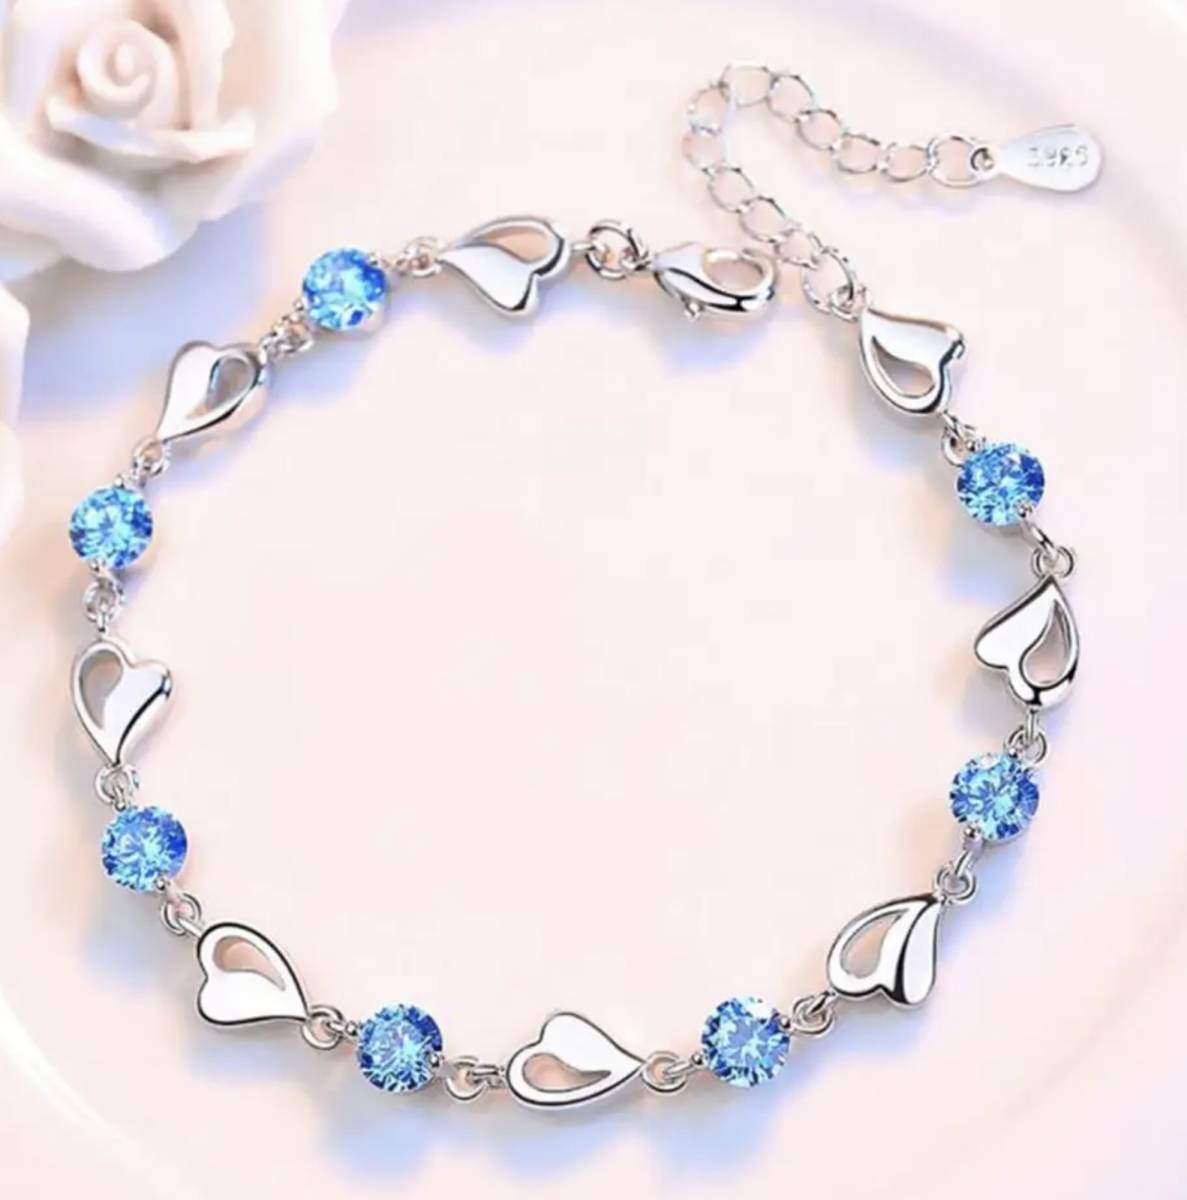  быстрое решение * новый товар * женский * sterling серебряная цепь 925* Heart форма * голубой Cubic Zirconia * браслет 22cm